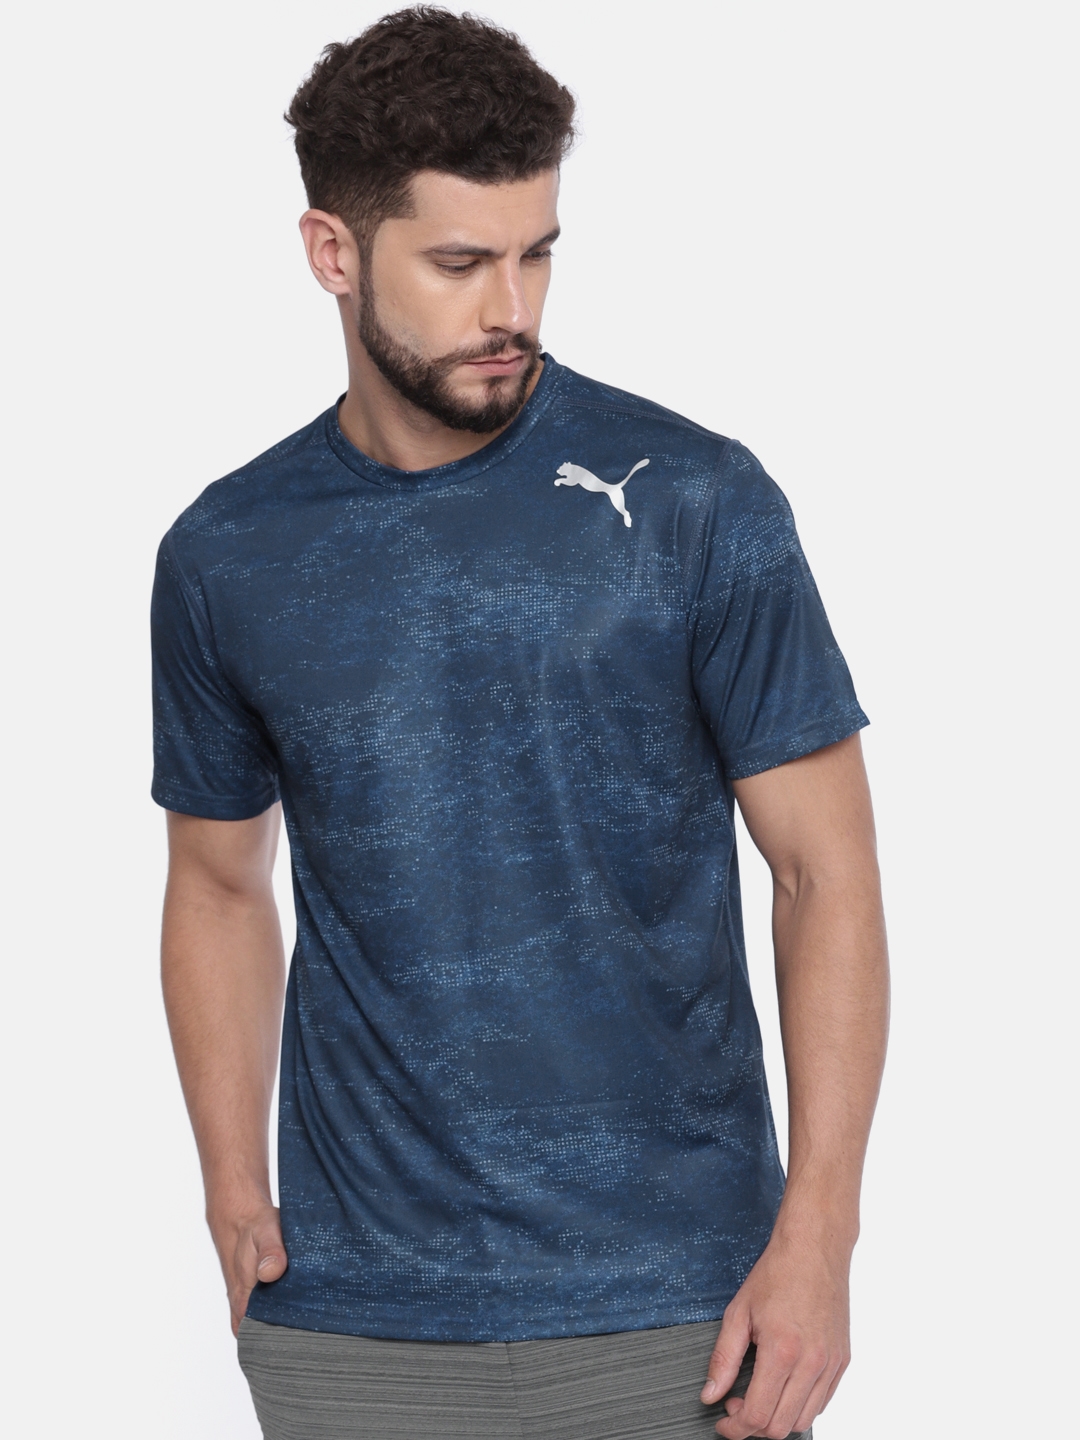 Buy Puma Men Blue Printed Round Neck DRY CELL T Shirt - Tshirts ...